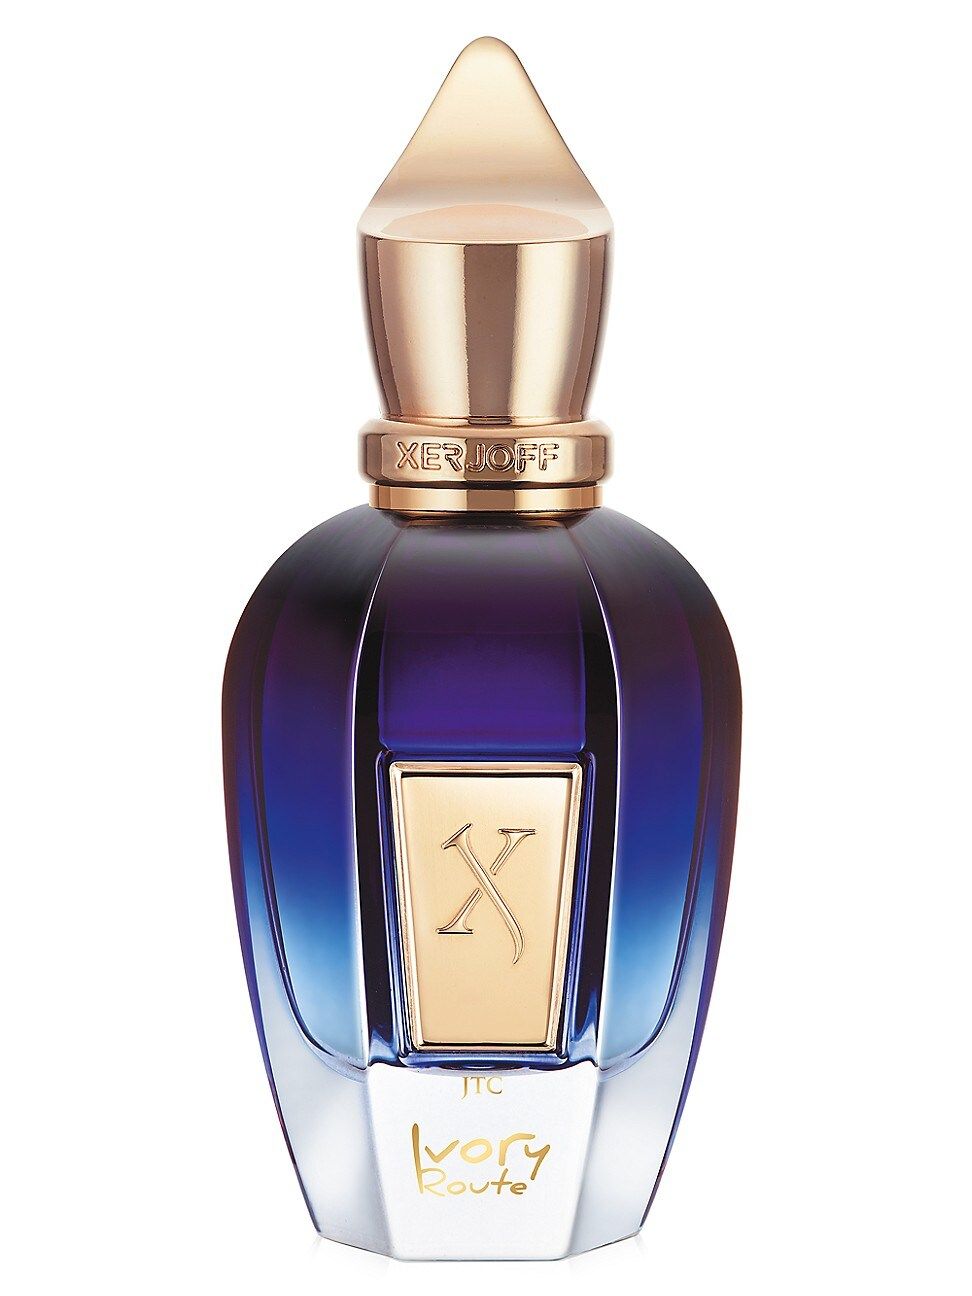 Xerjoff Ivory Route Eau de Parfum | Saks Fifth Avenue